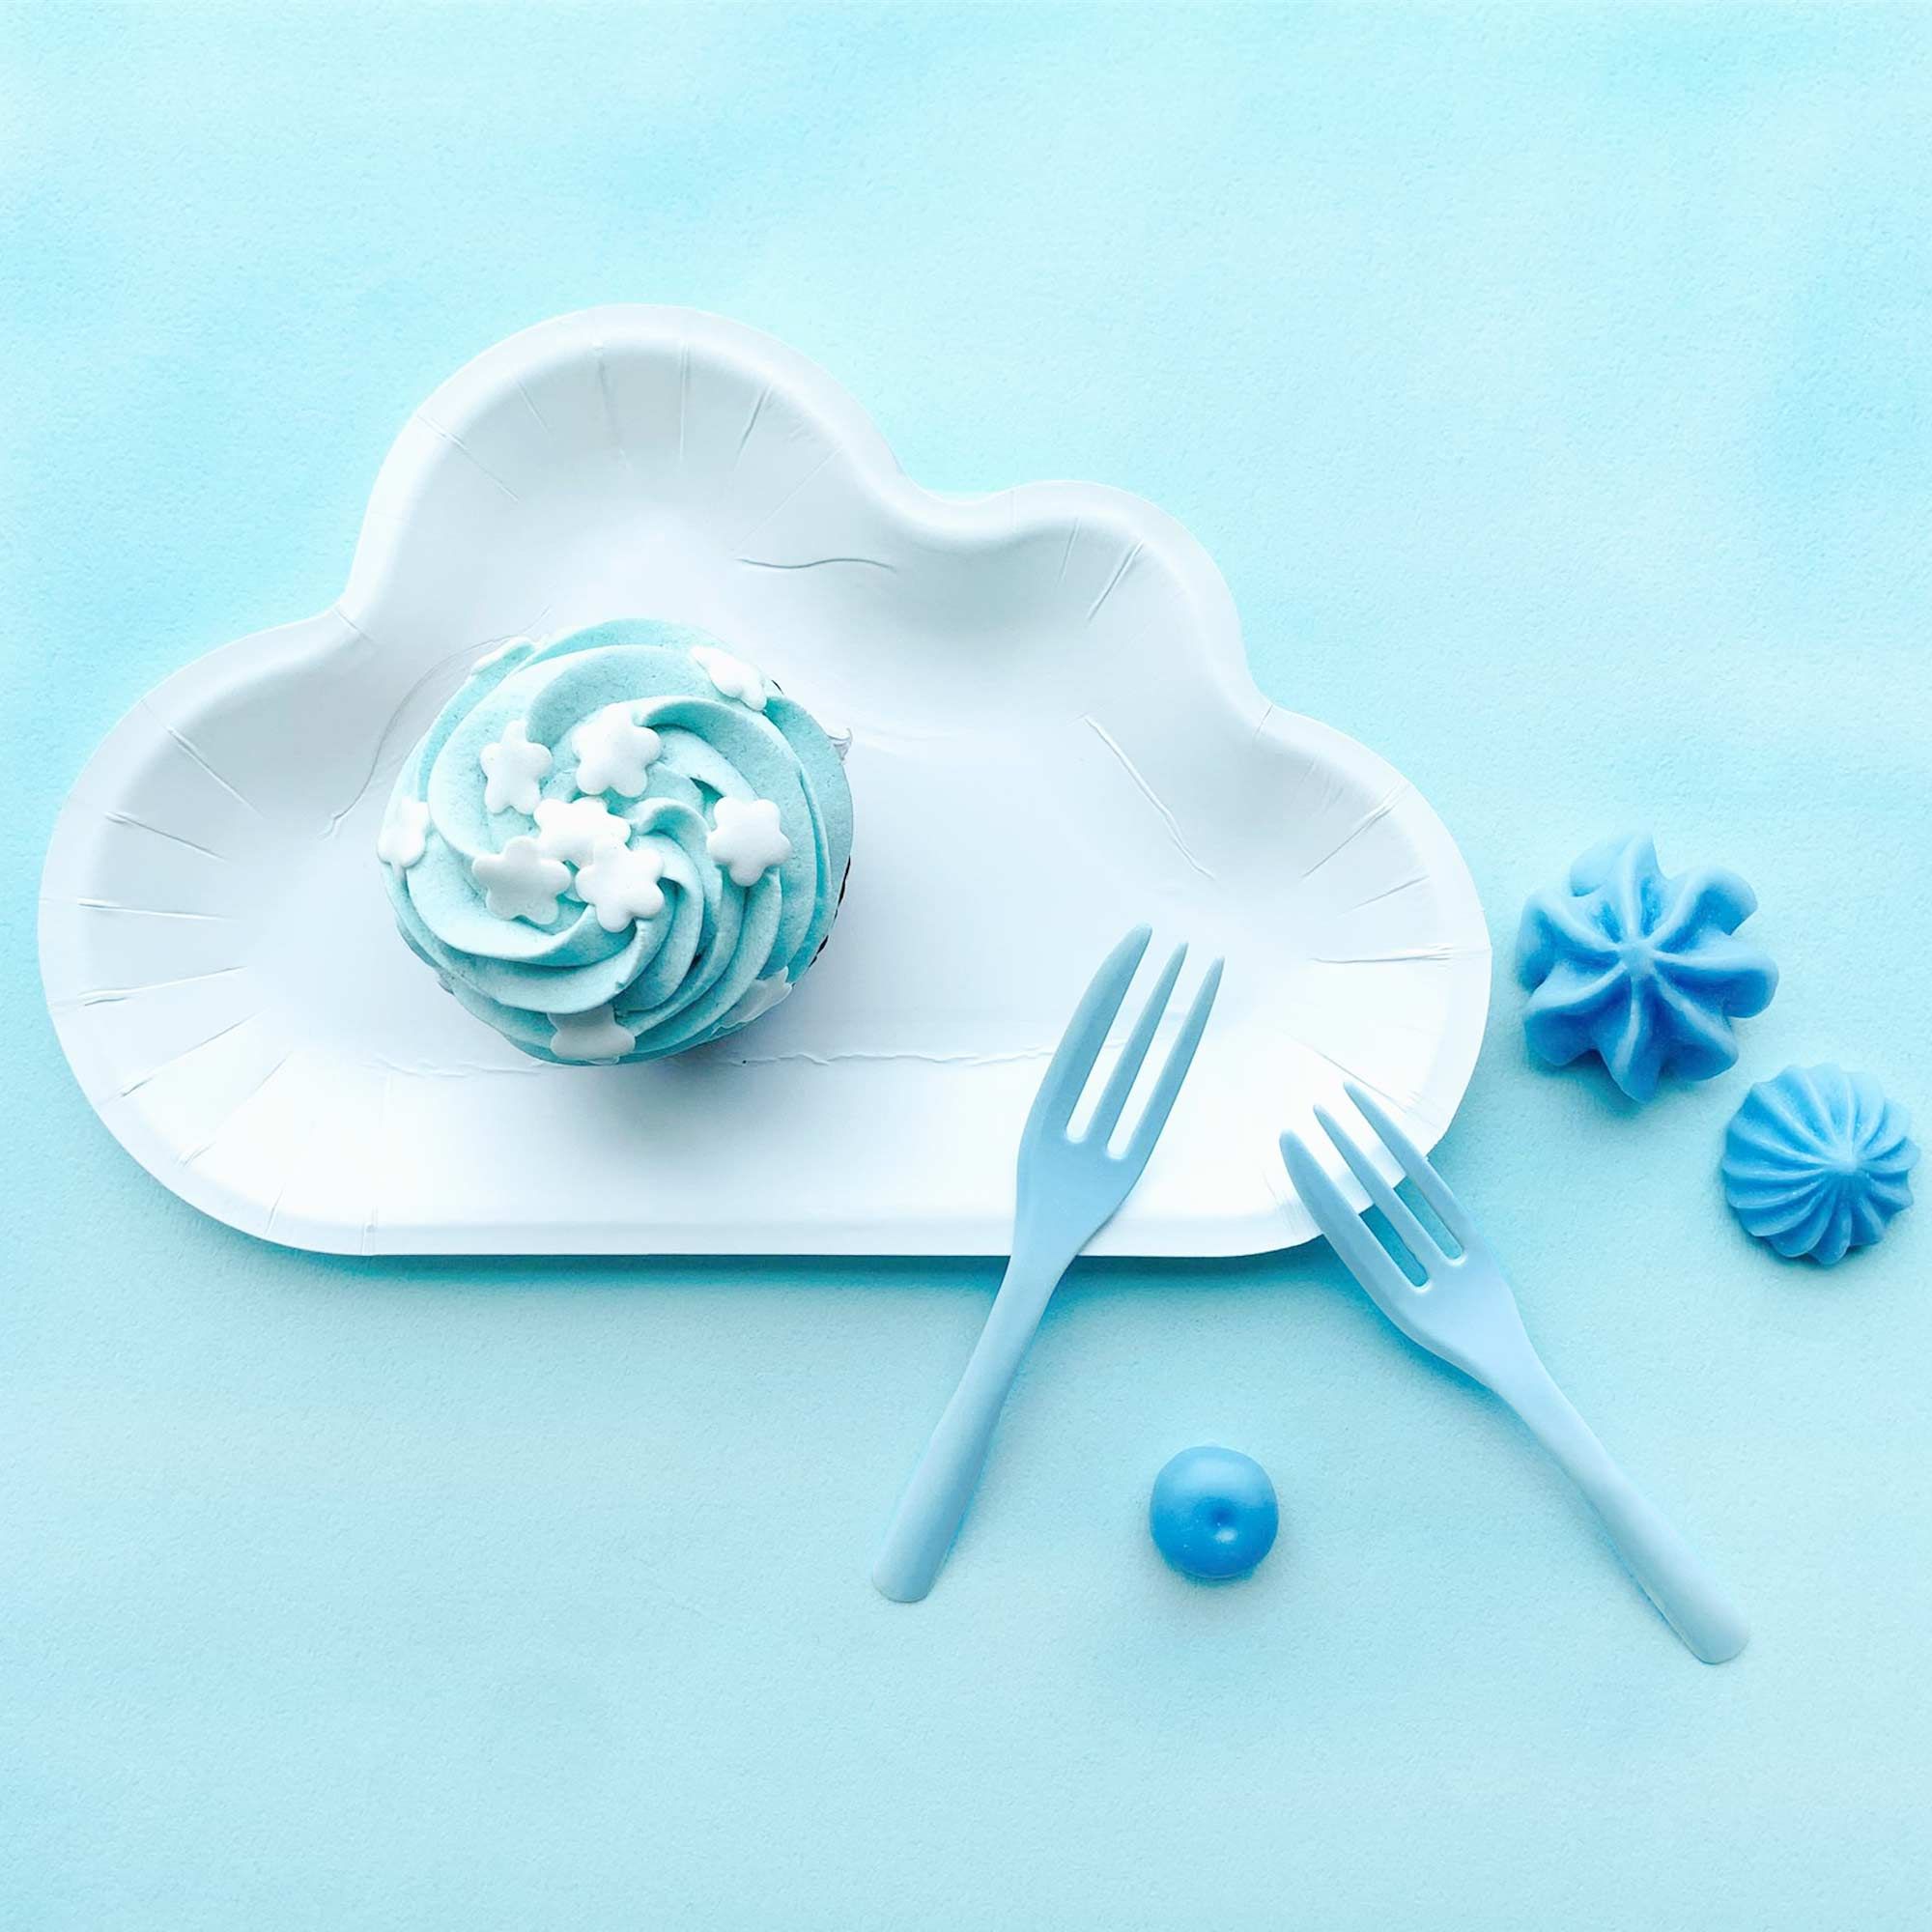 白雲朵盤叉組搭配藍色法式蛋糕叉，營造出藍天白雲的氛圍